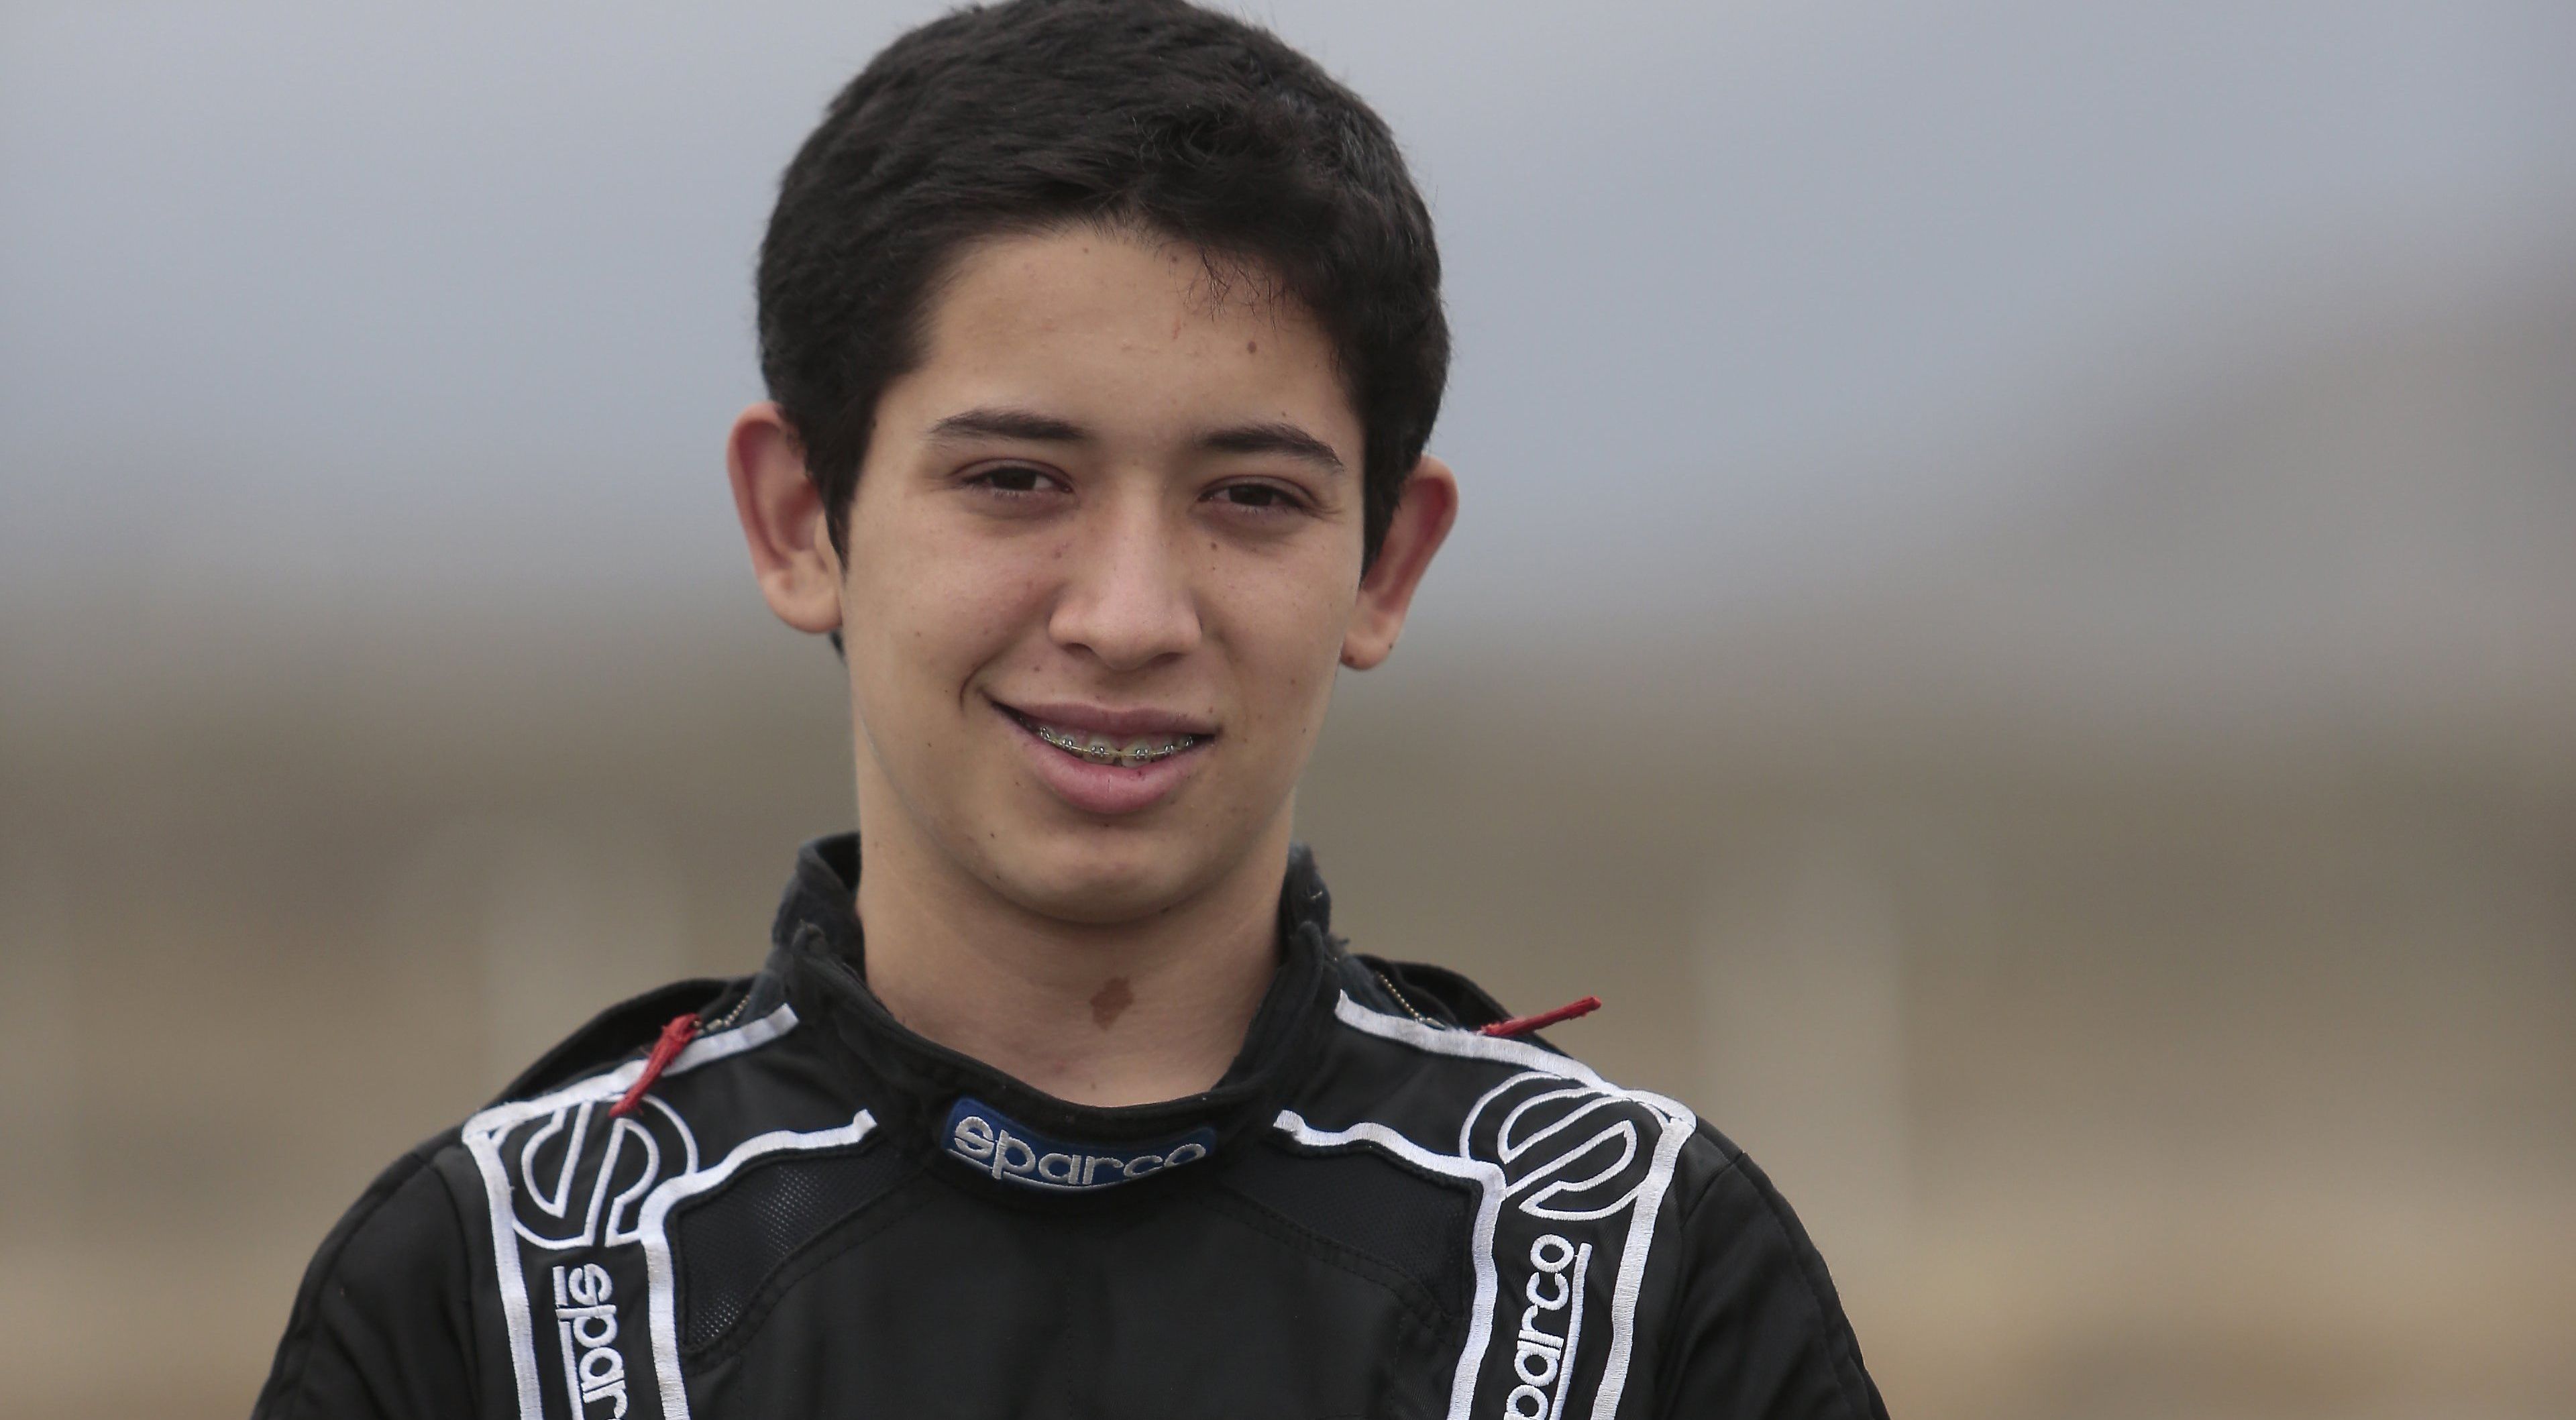 Diego quiere competir el próximo año en la Fórmula 4 Sudamericana. (Nancy Dueñas)